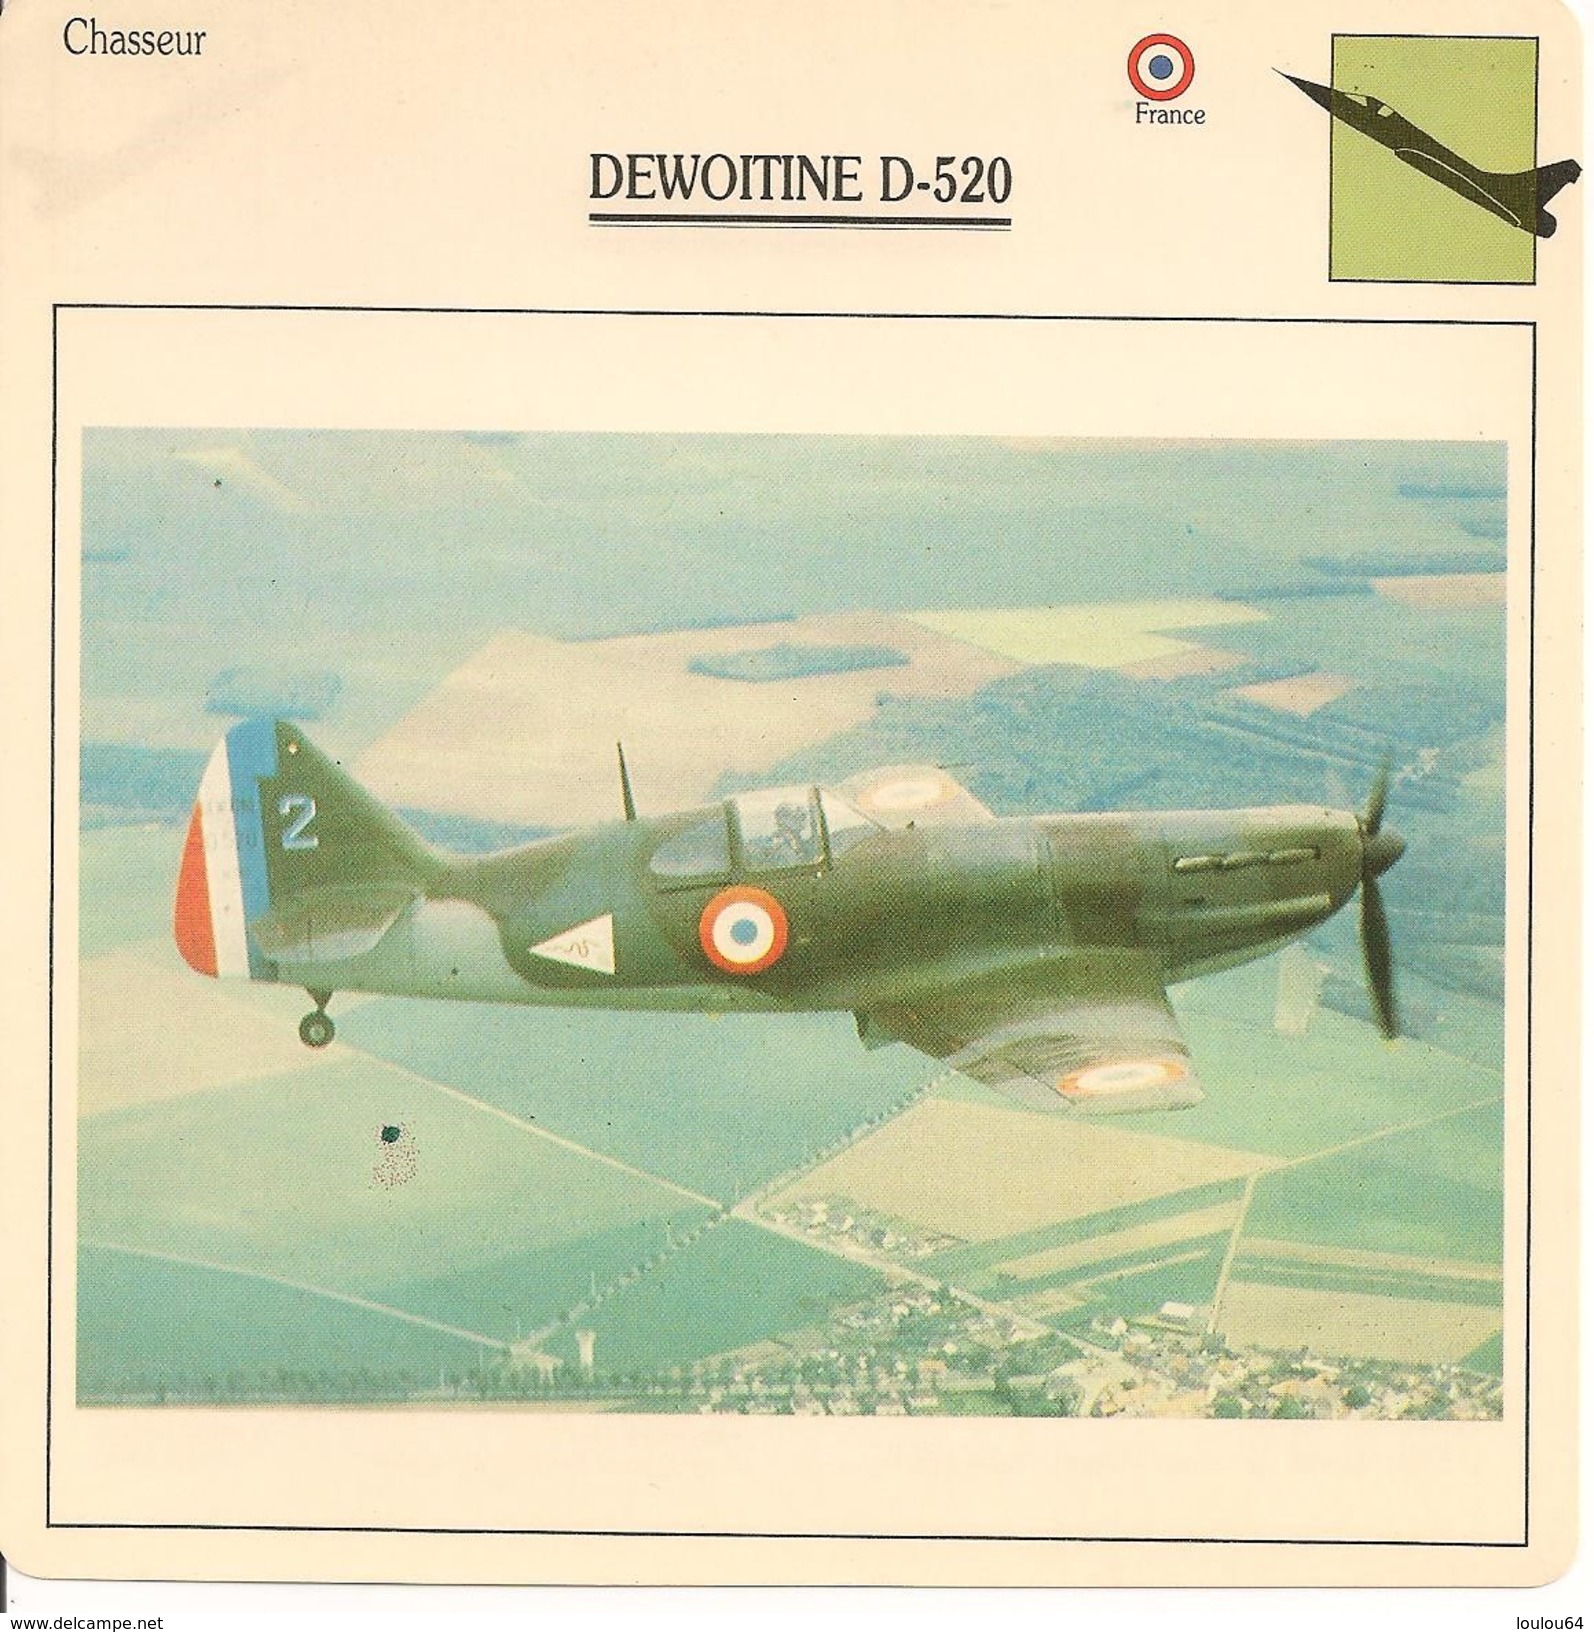 Fiches Illustrées - Caractéristiques Avions - Chasseur - DEWOITINE D-520 - FRANCE - (54) - Aviation